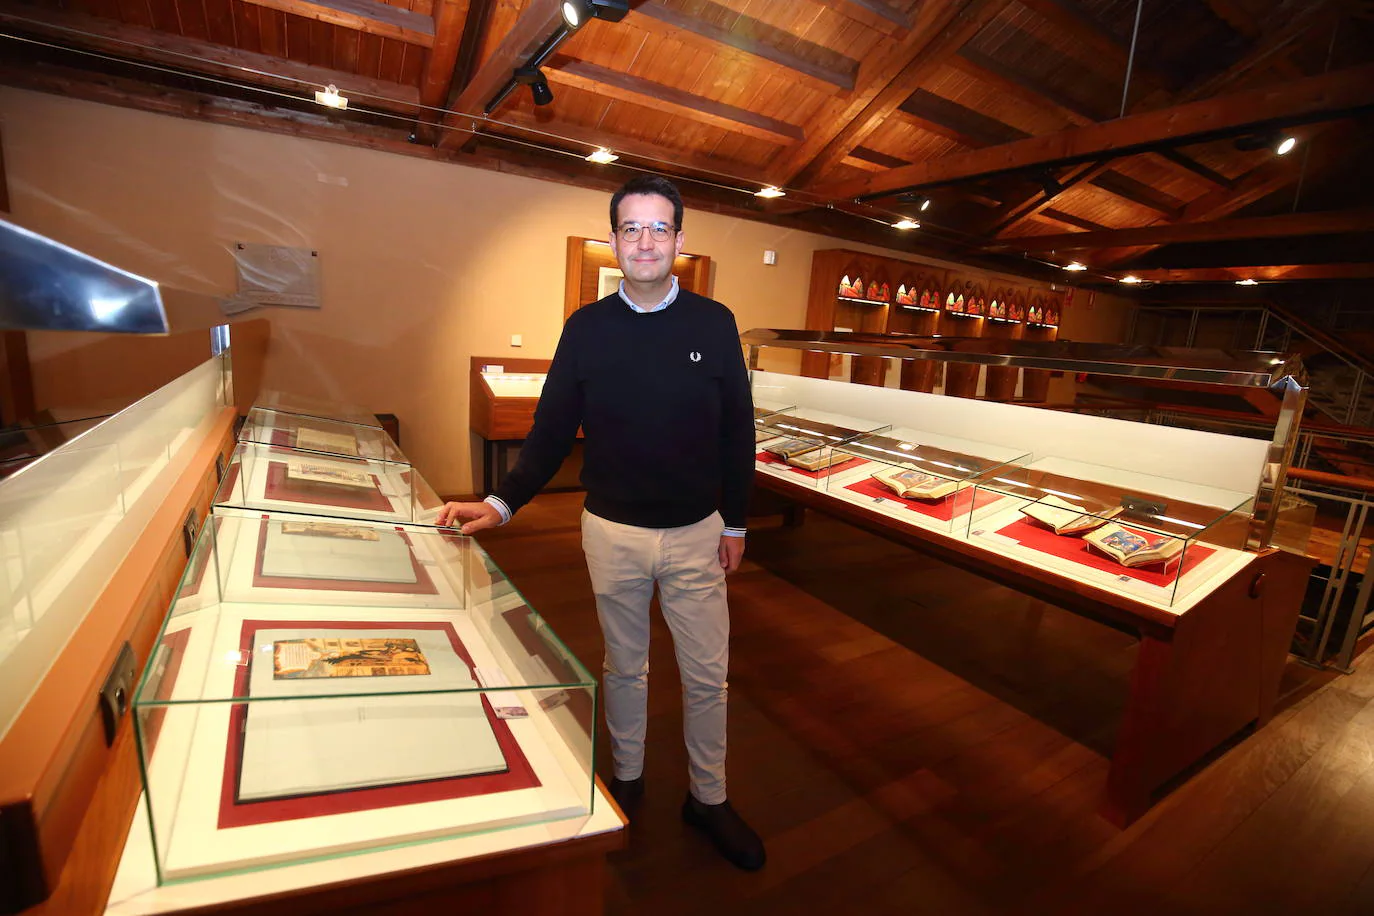 El director de los museos de Ponferrada, Javier García Bueso, junto a la exposición permanente Templum Libri en el Castillo de los Templarios